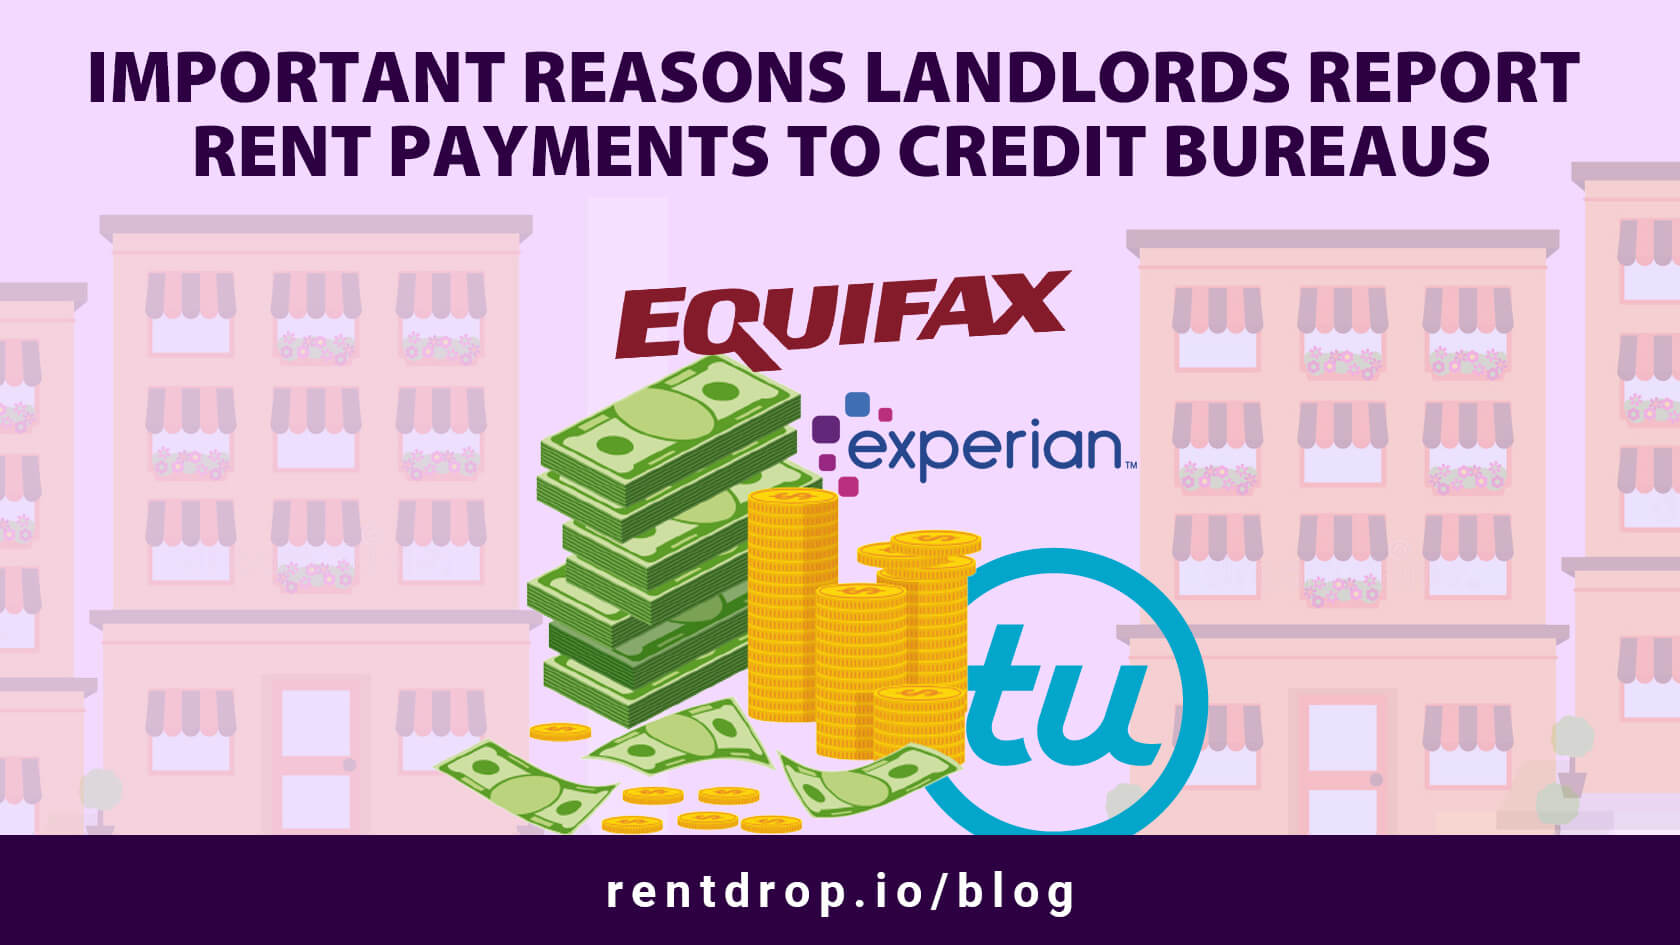 andlord report rent payments credit bureau rentdrop hero